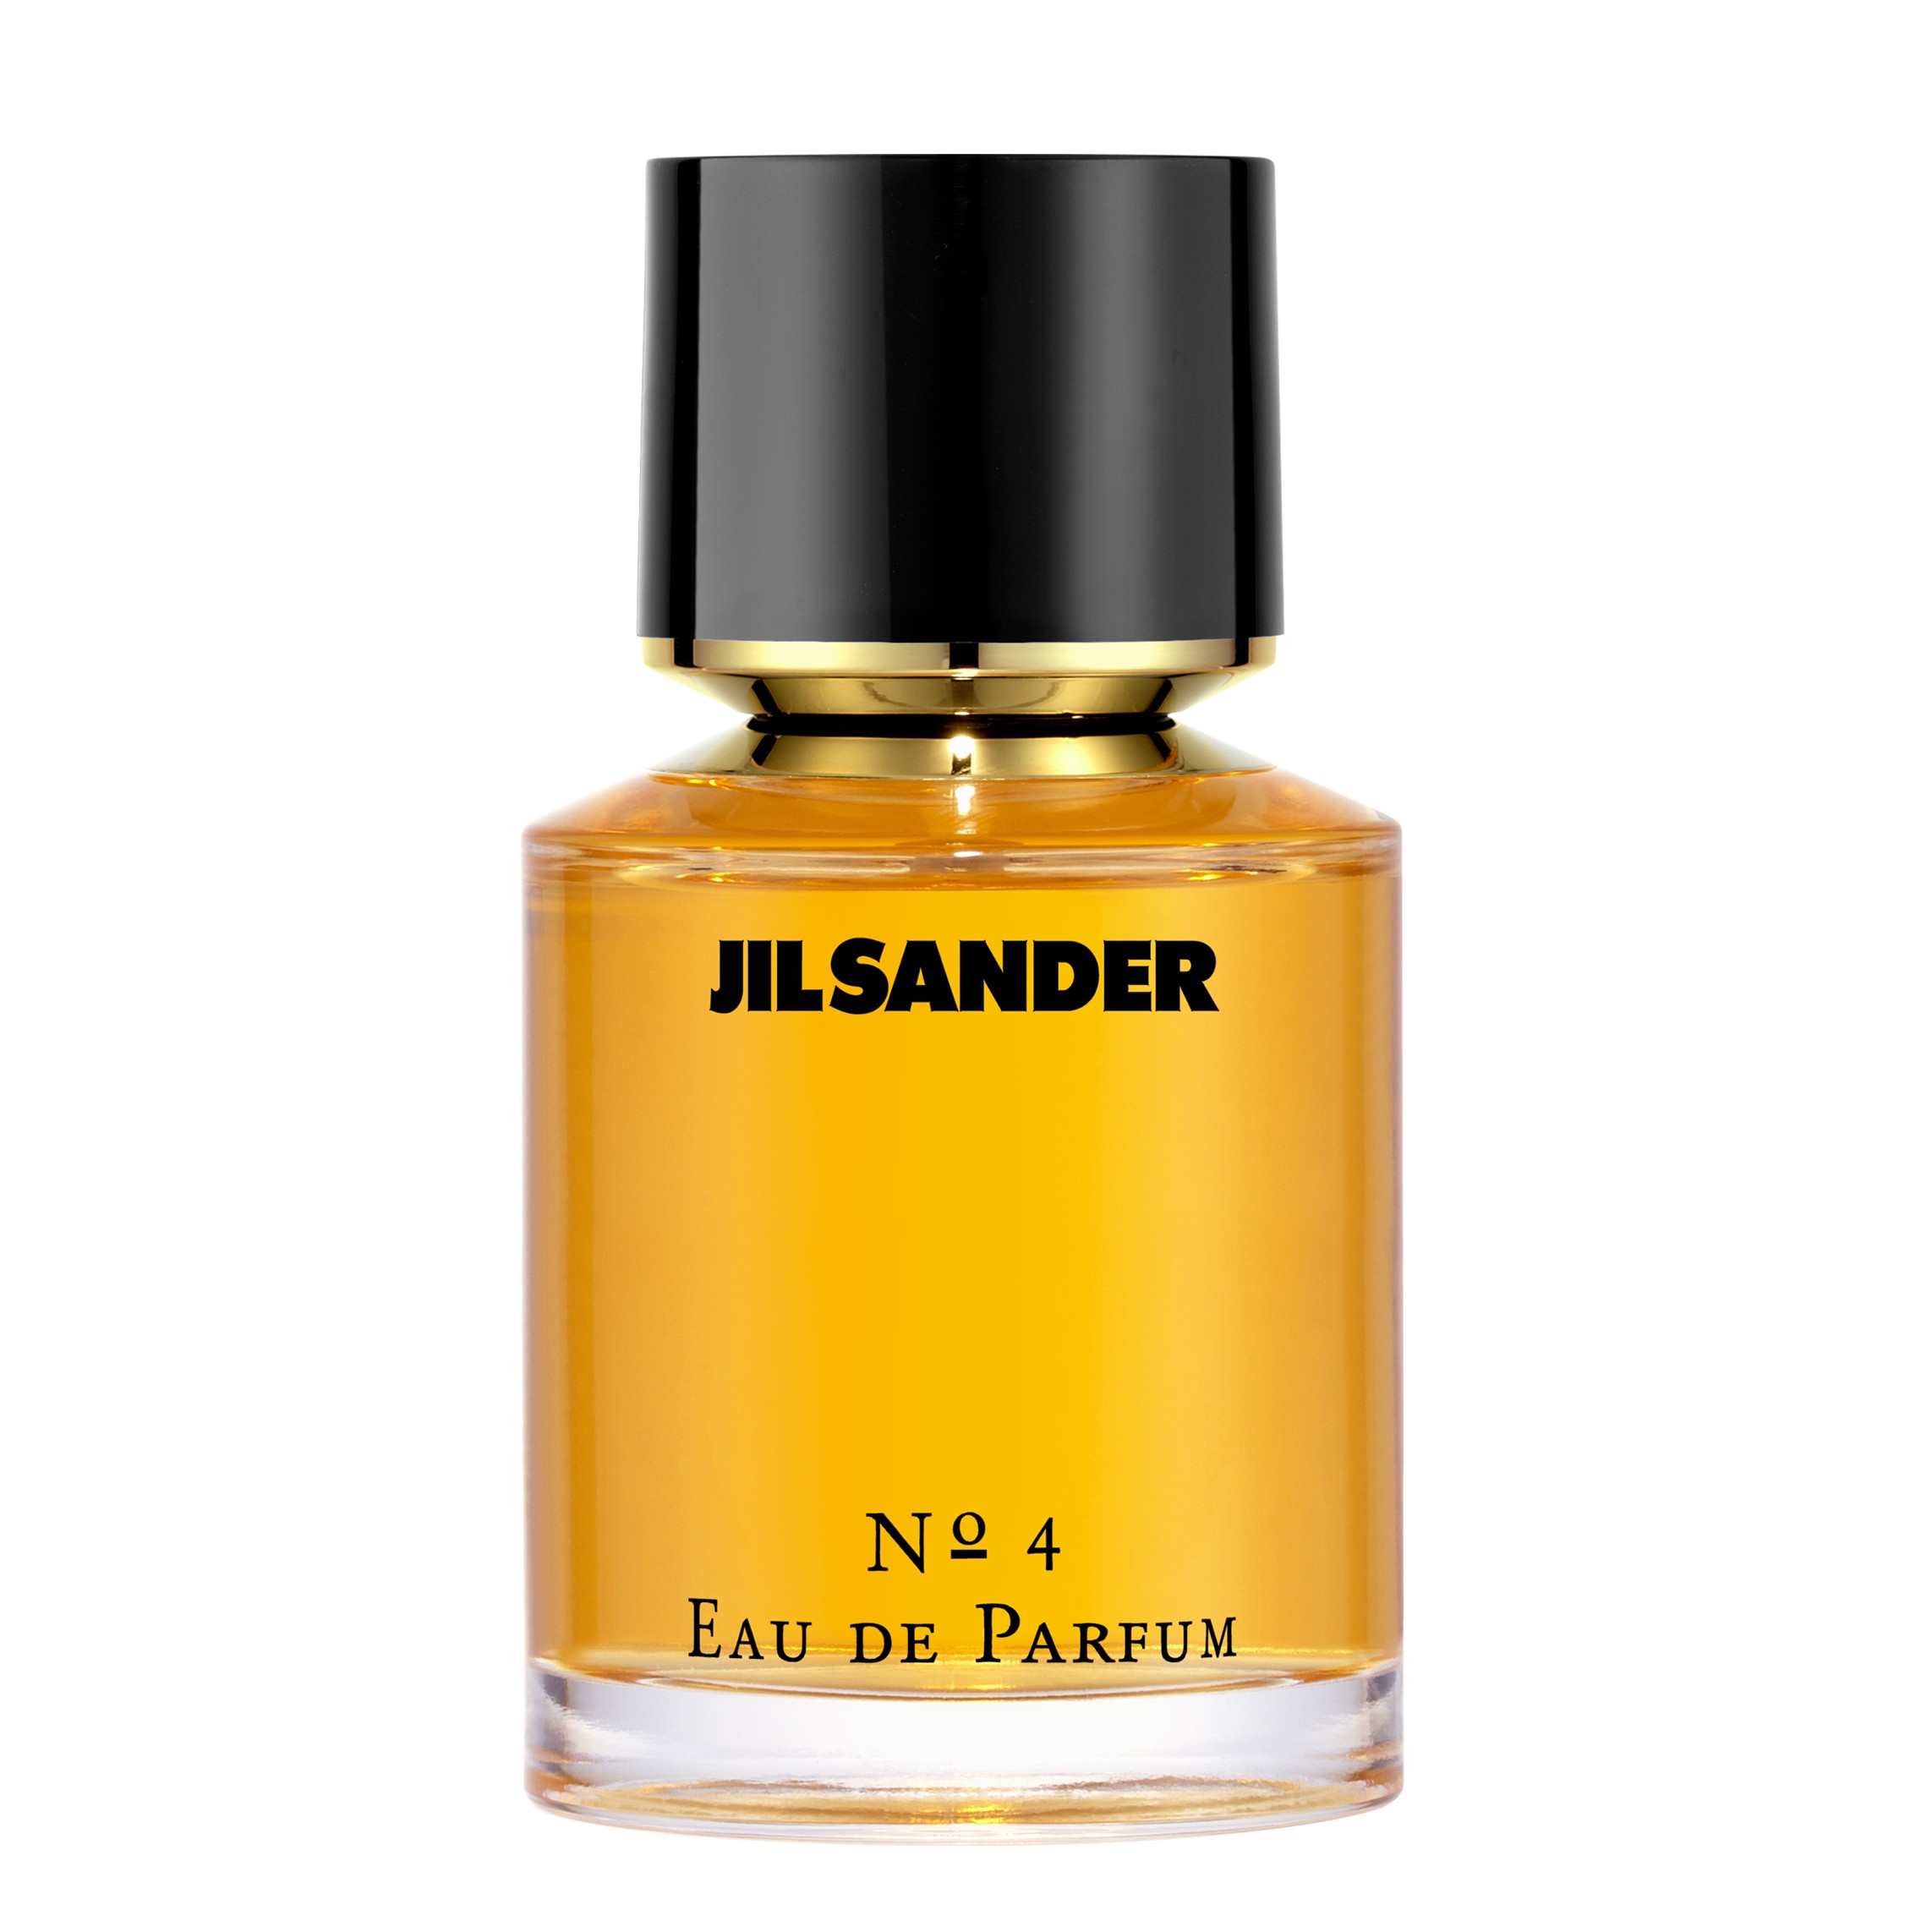 Jil Sander No. 4 Eau de Parfum 100ml